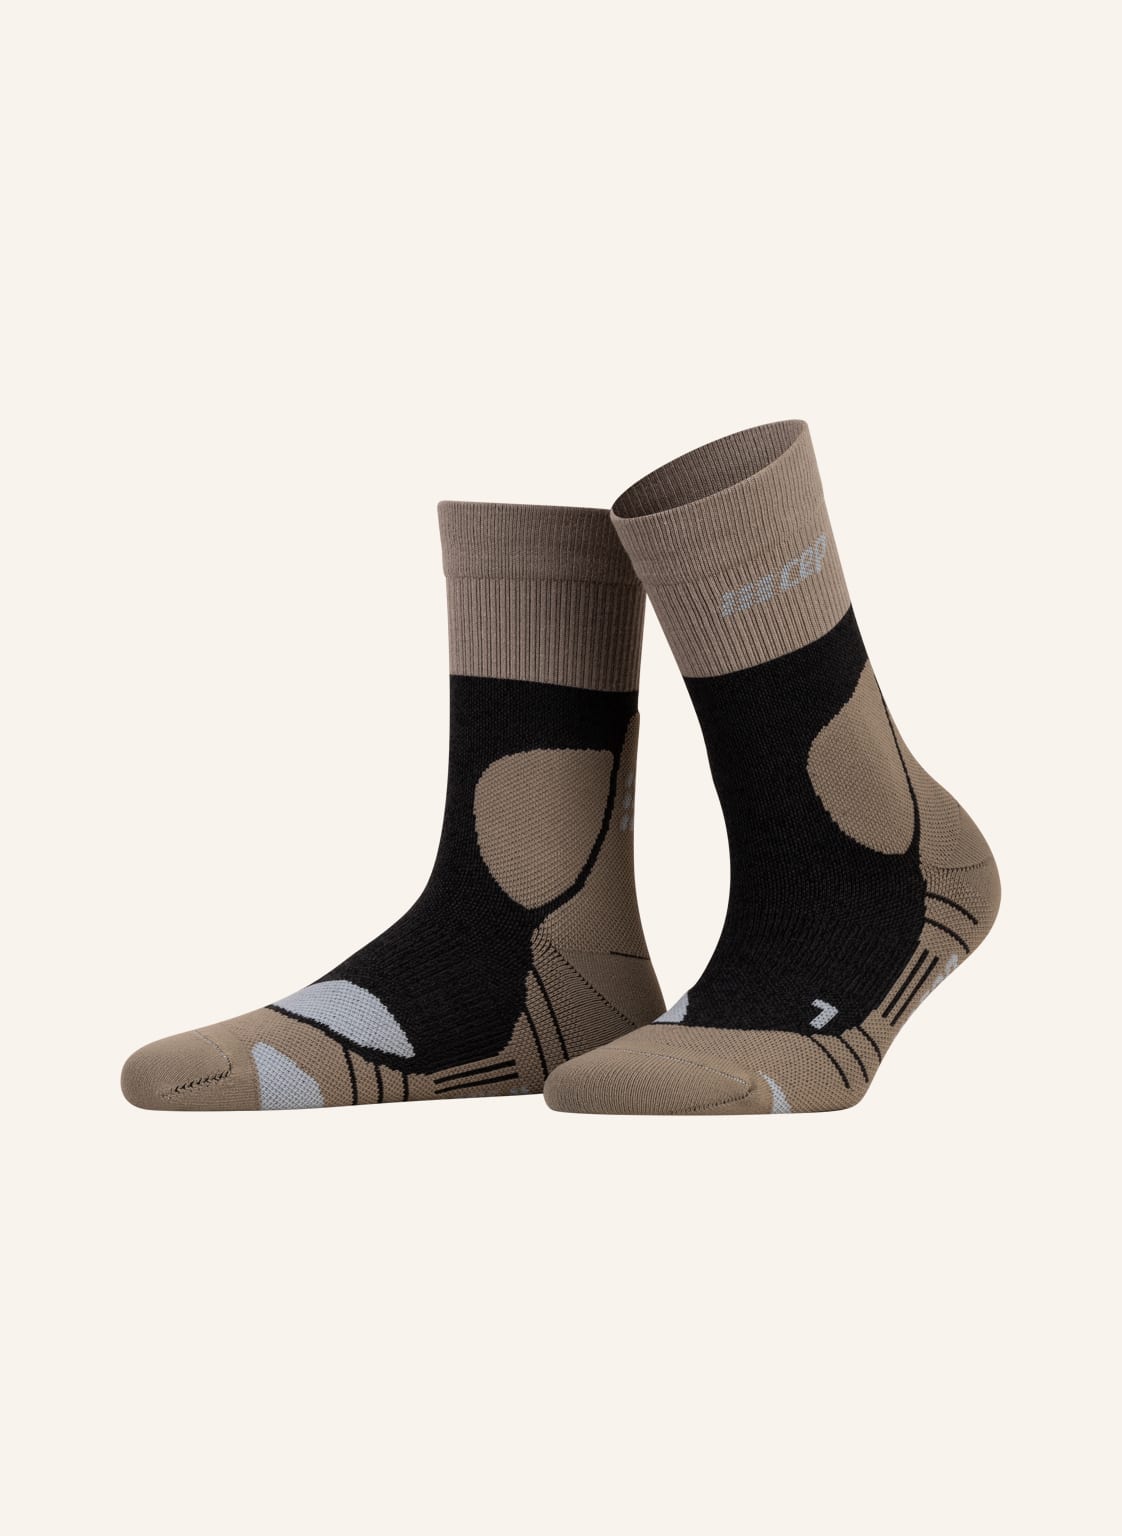 Cep Trekking-Socken Merino Compression - Mid Cut beige von CEP